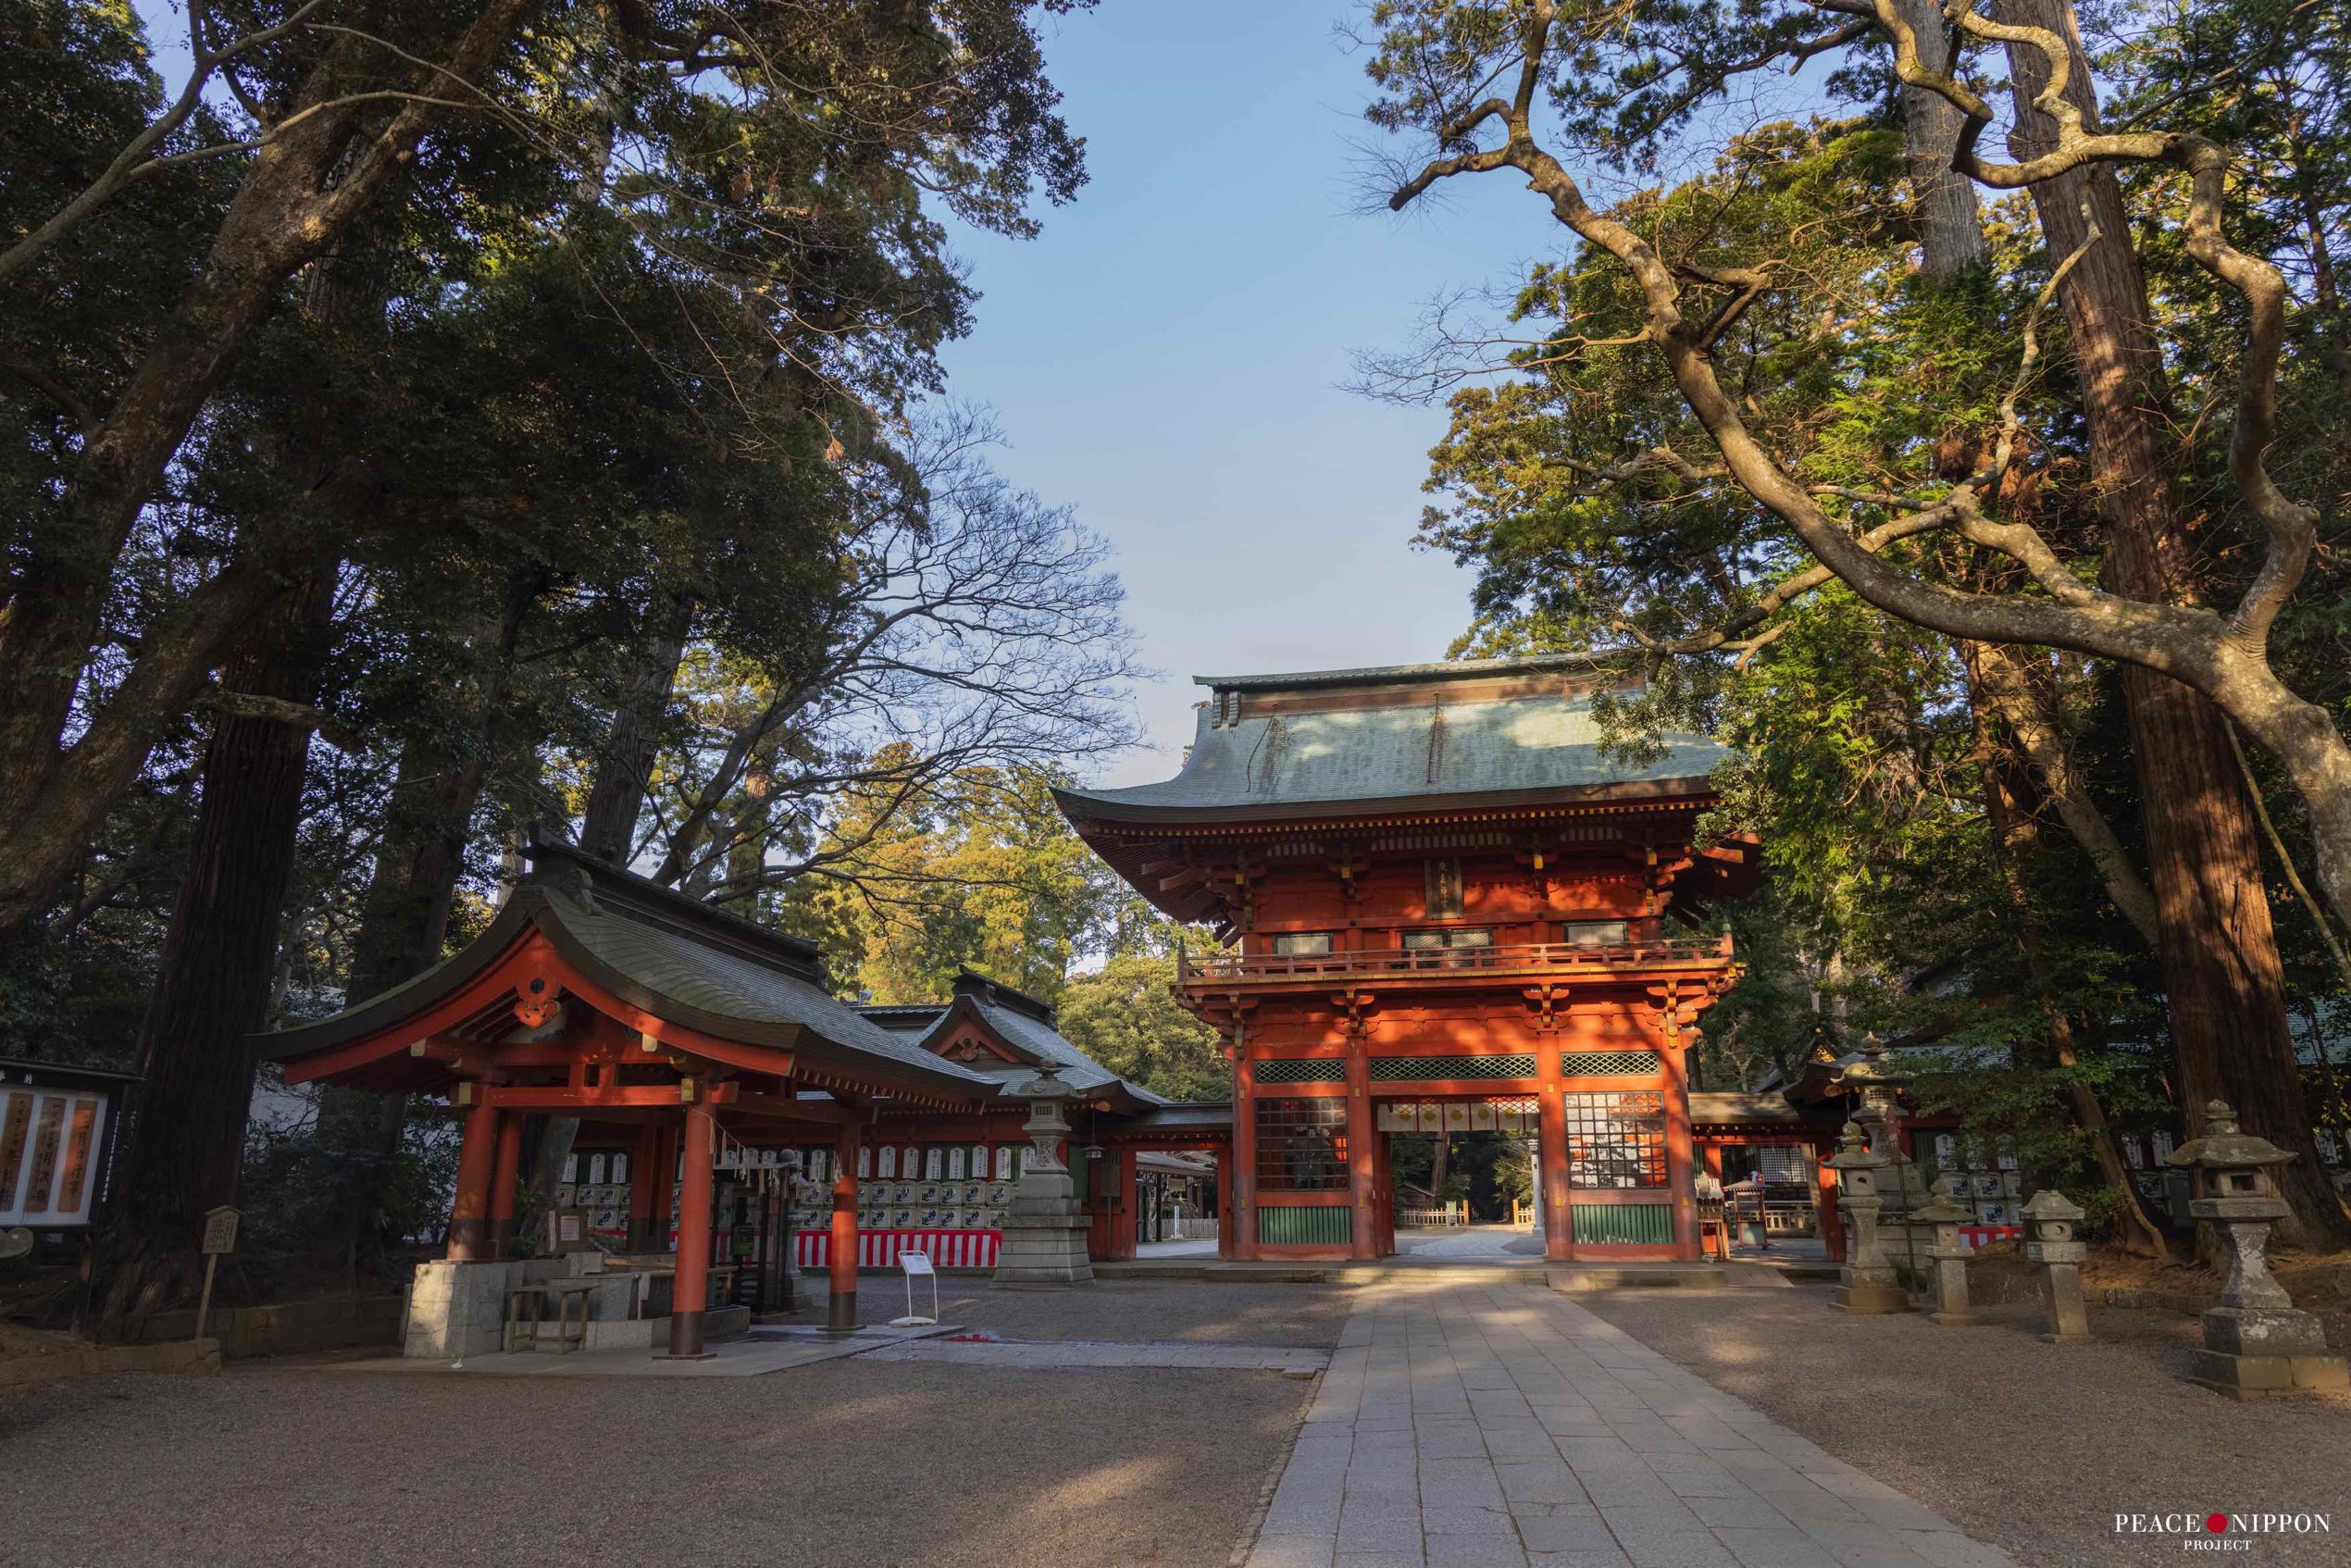 鹿島神宮 Kashima Jingu Shrine – Peace Nippon Project